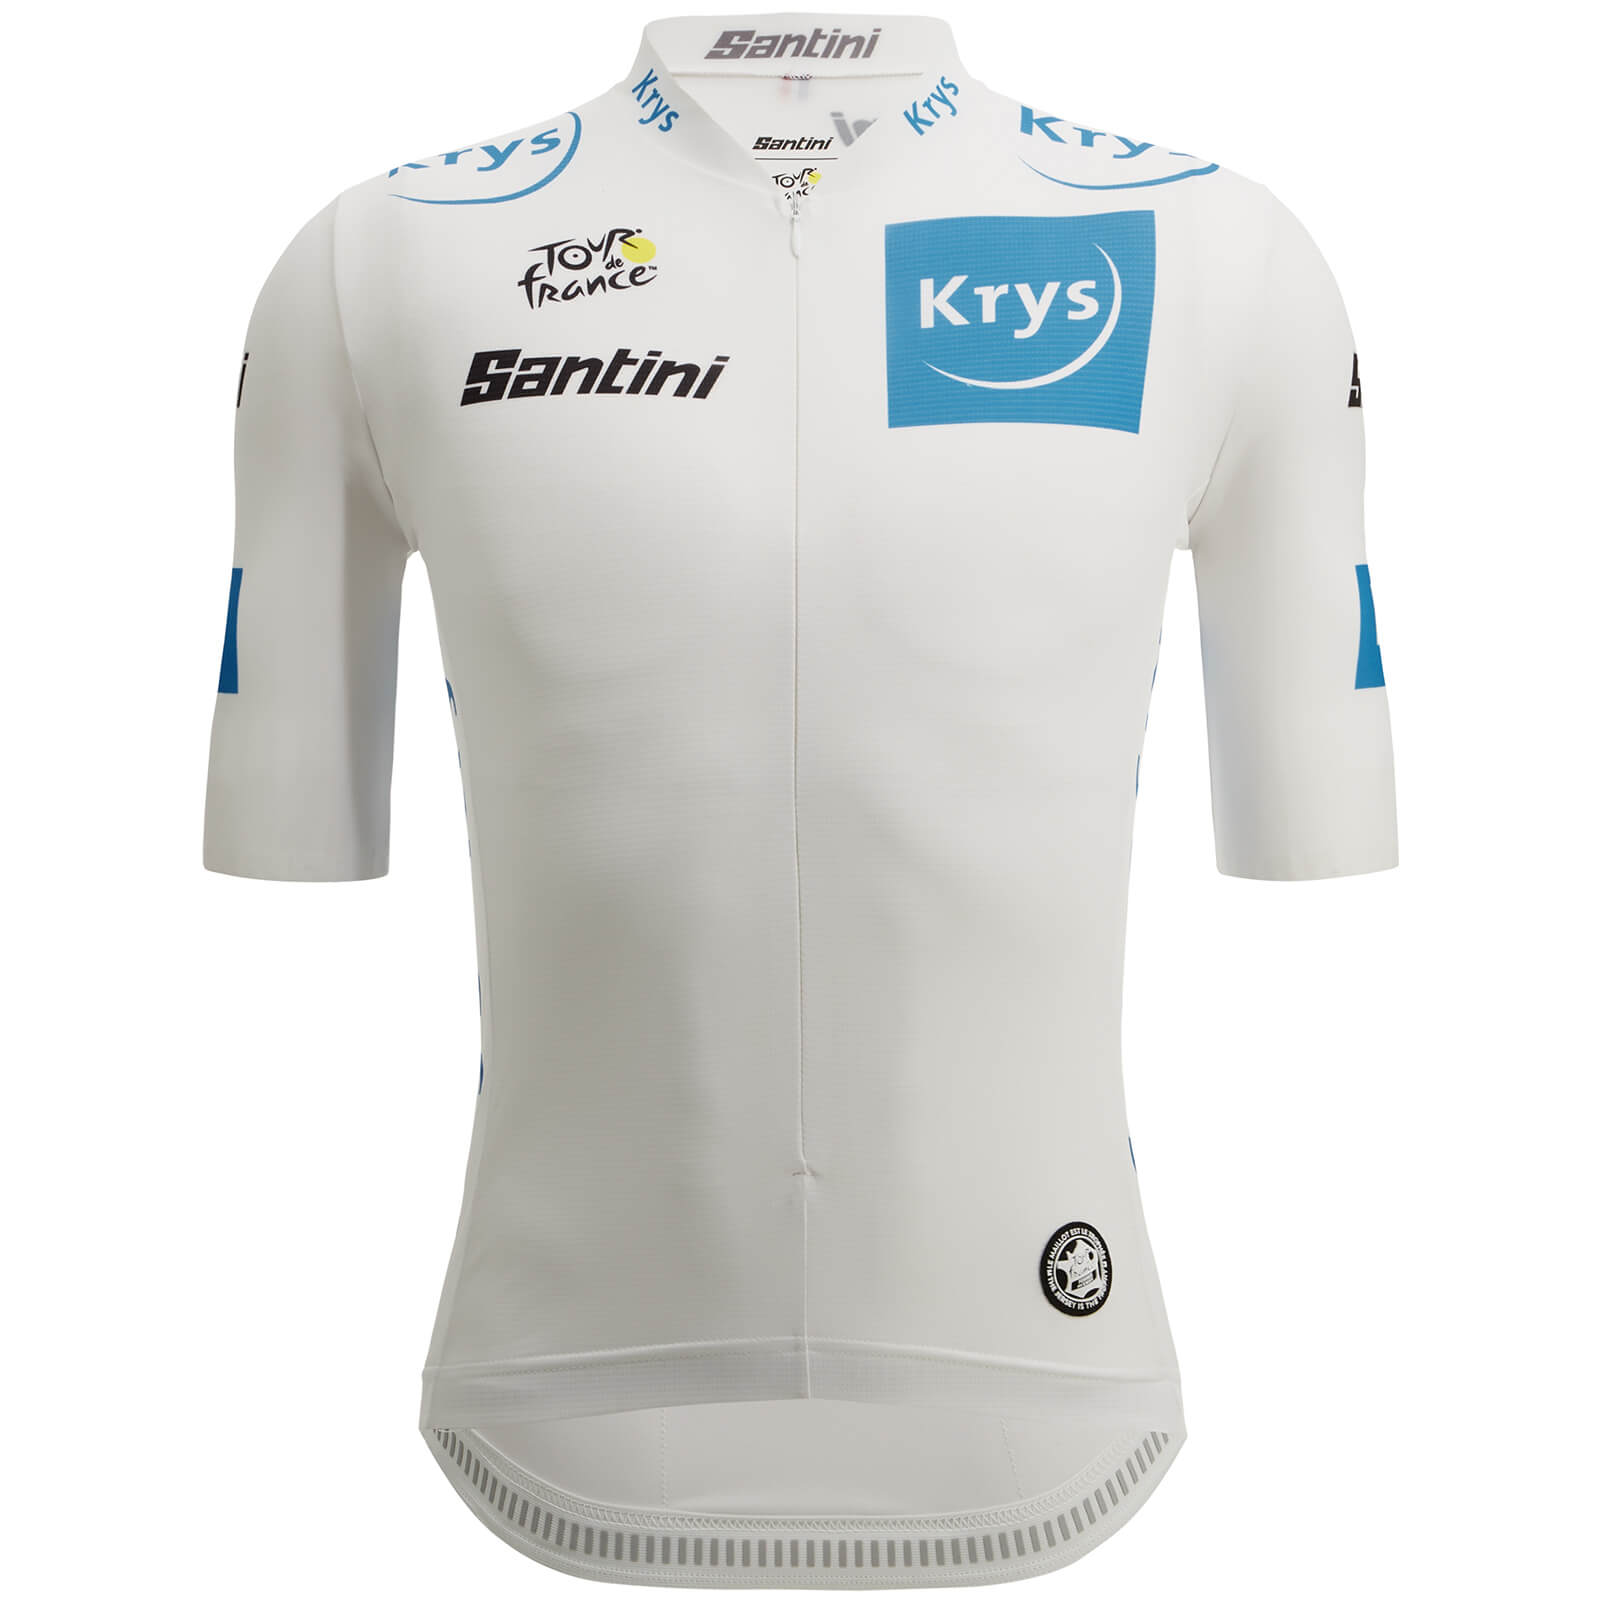 Santini Tour de France Young Rider Jersey - L